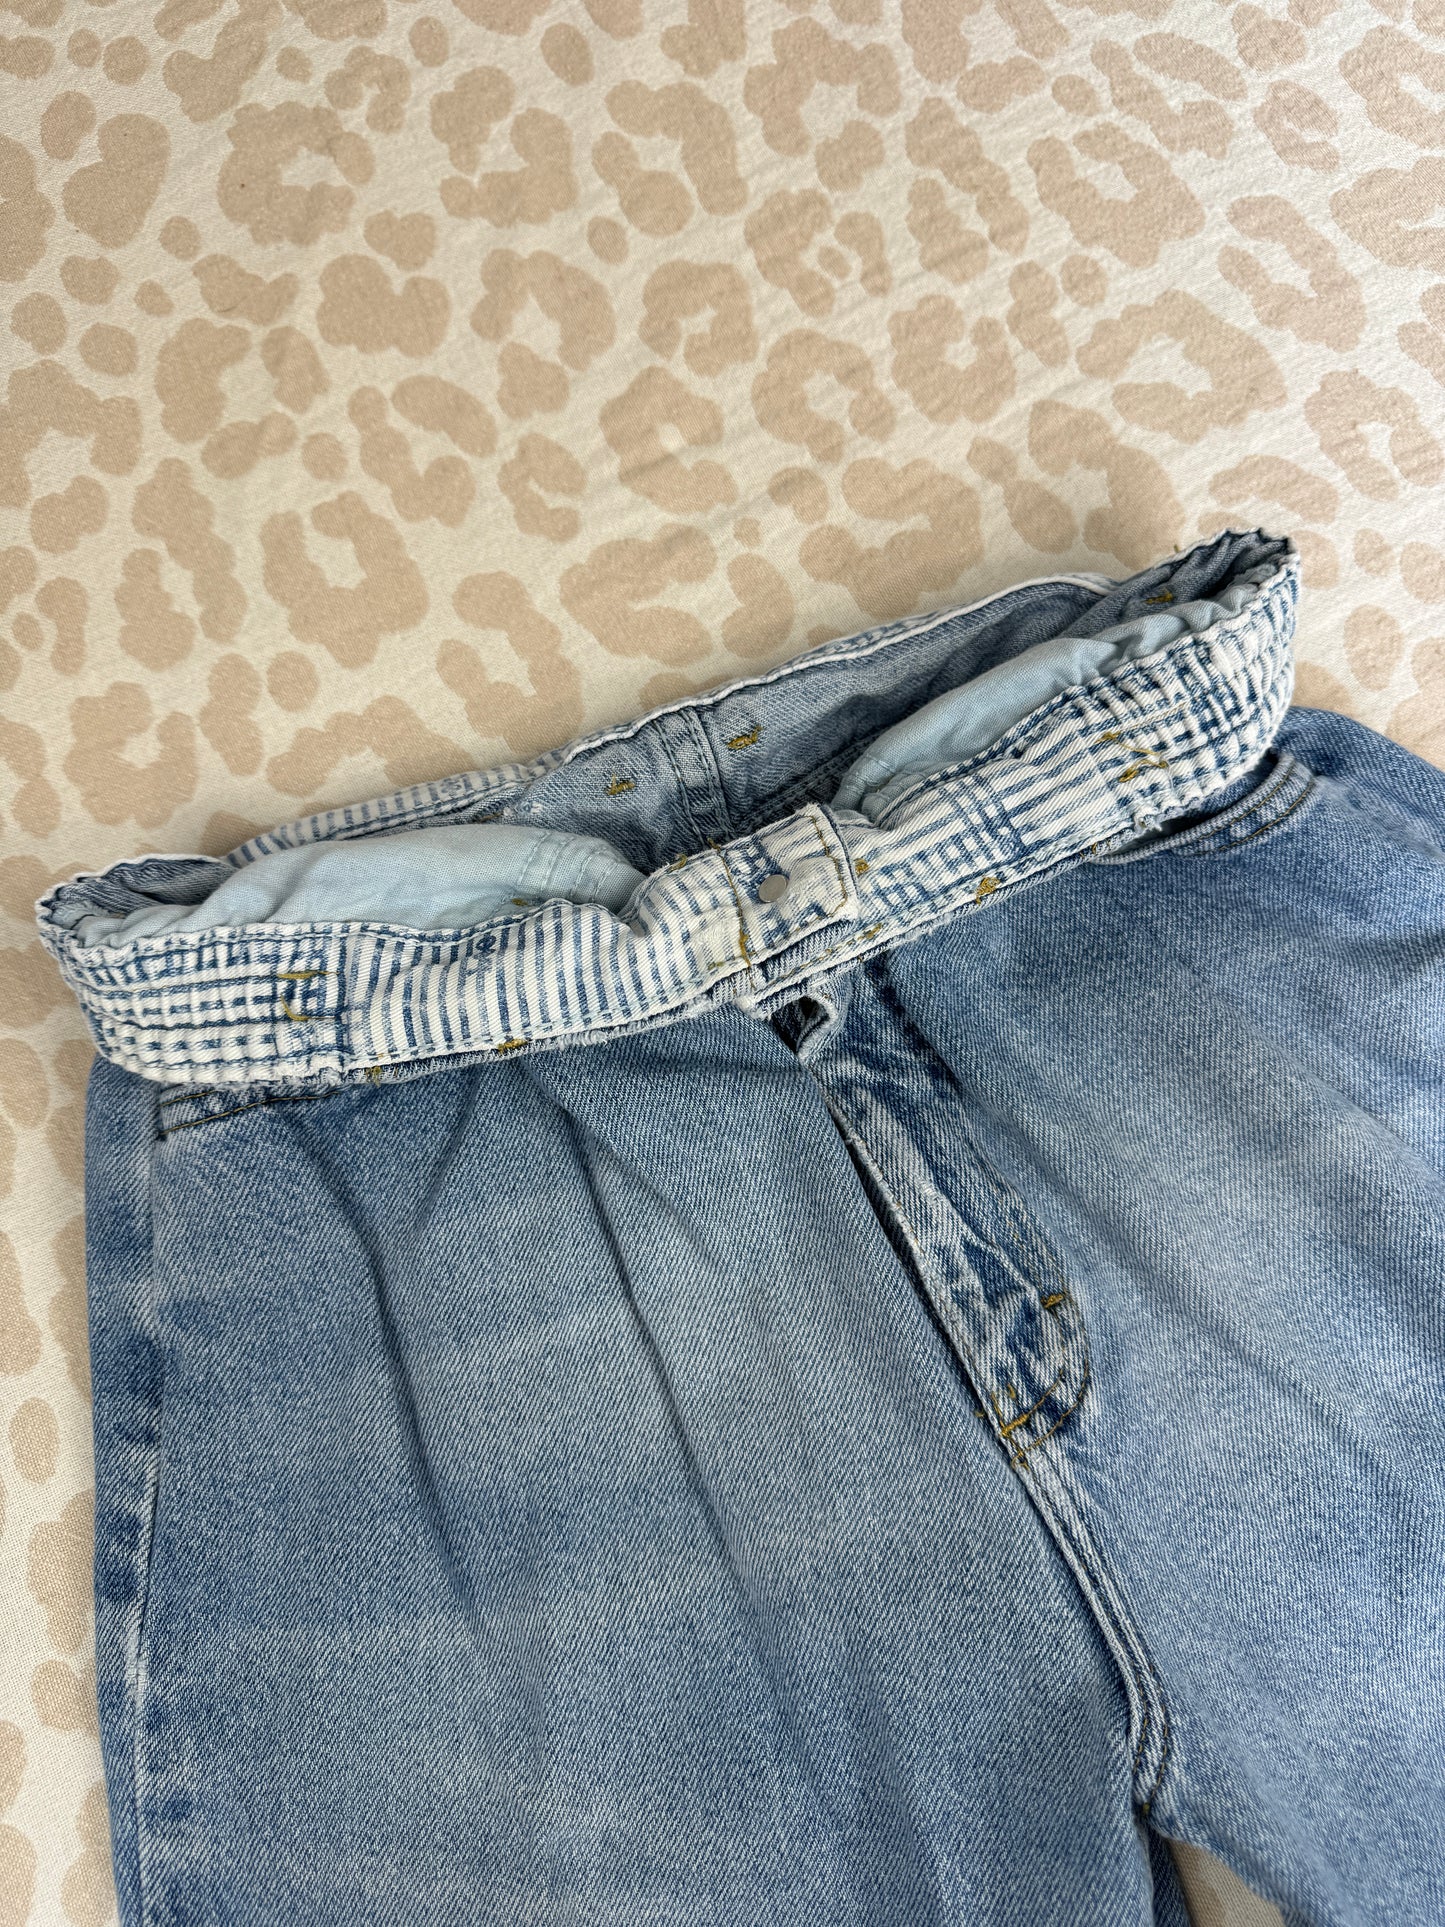 Vintage Lee Jeans (12)